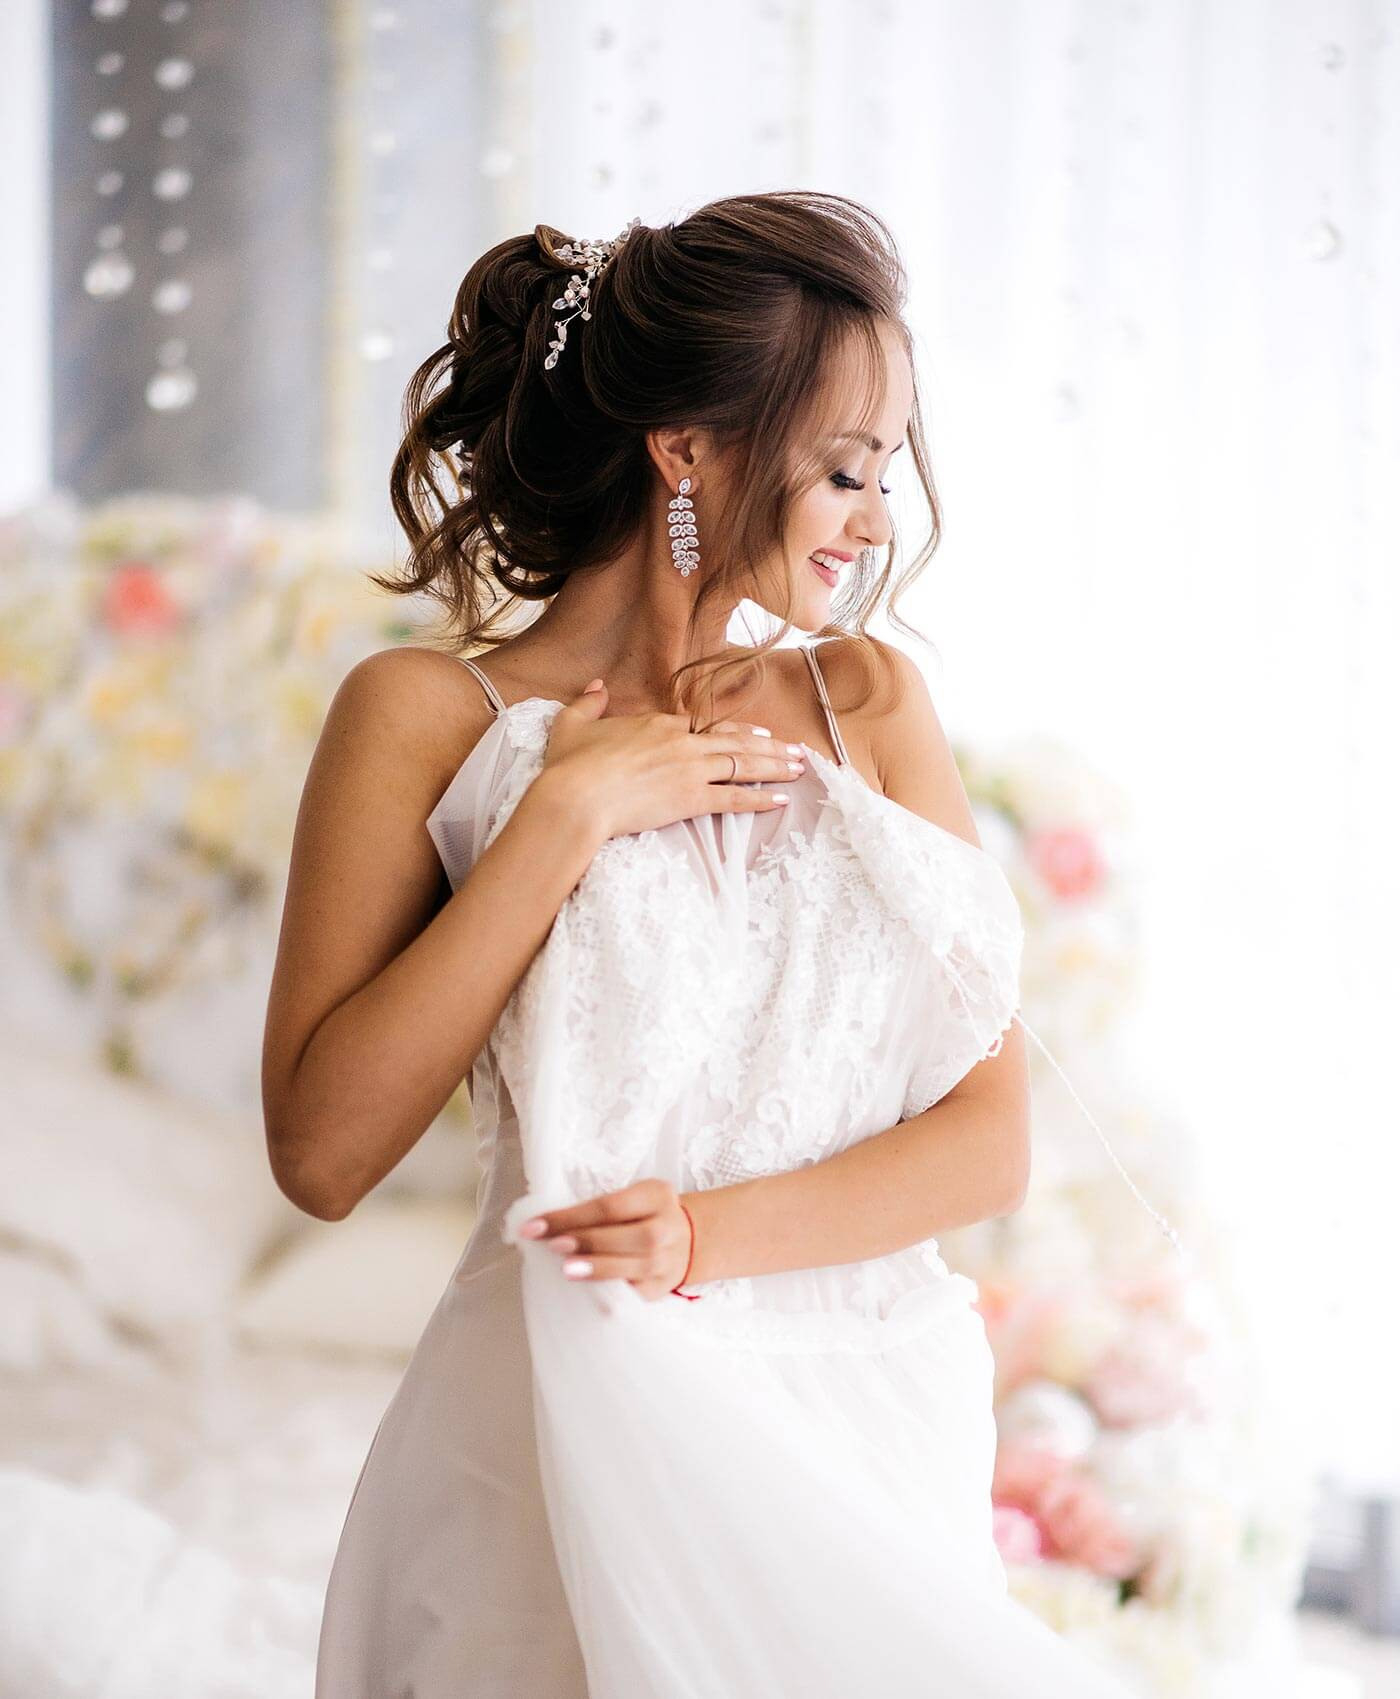 Brautkleid Nach Der Hochzeit: 13 Schöne, Kreative